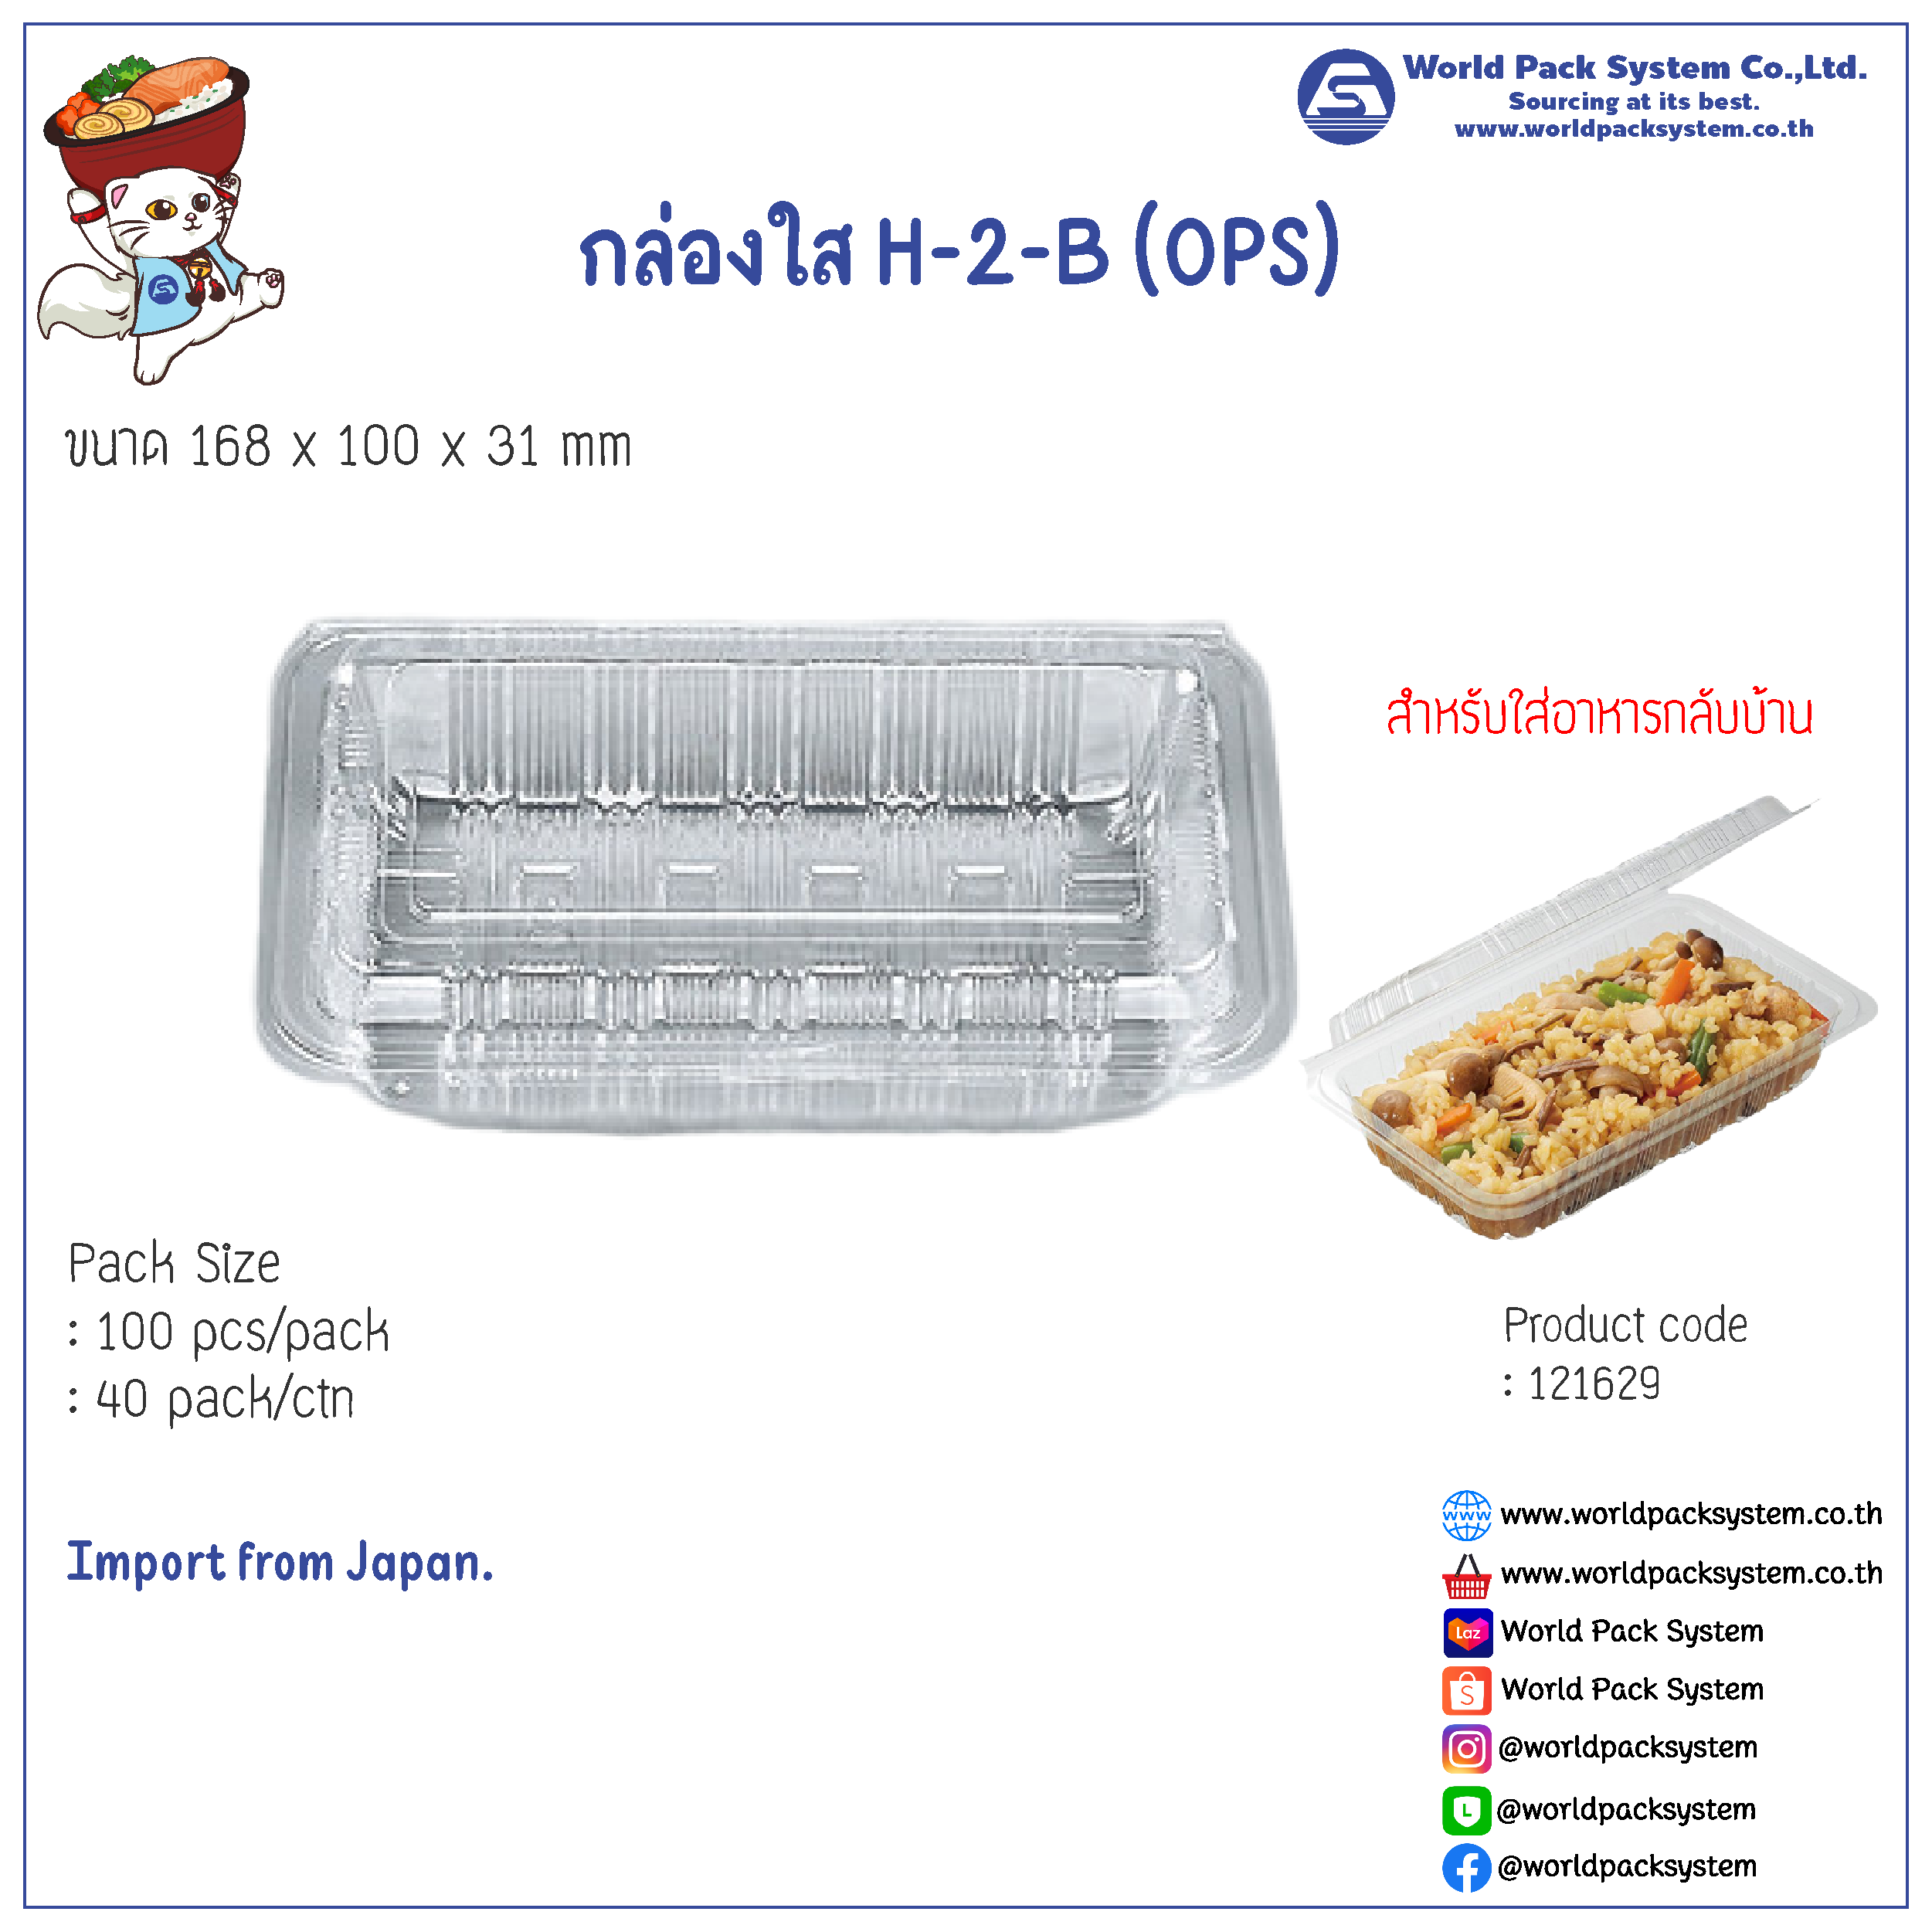 Food Pack H-2-B (OPS) (100 pcs)